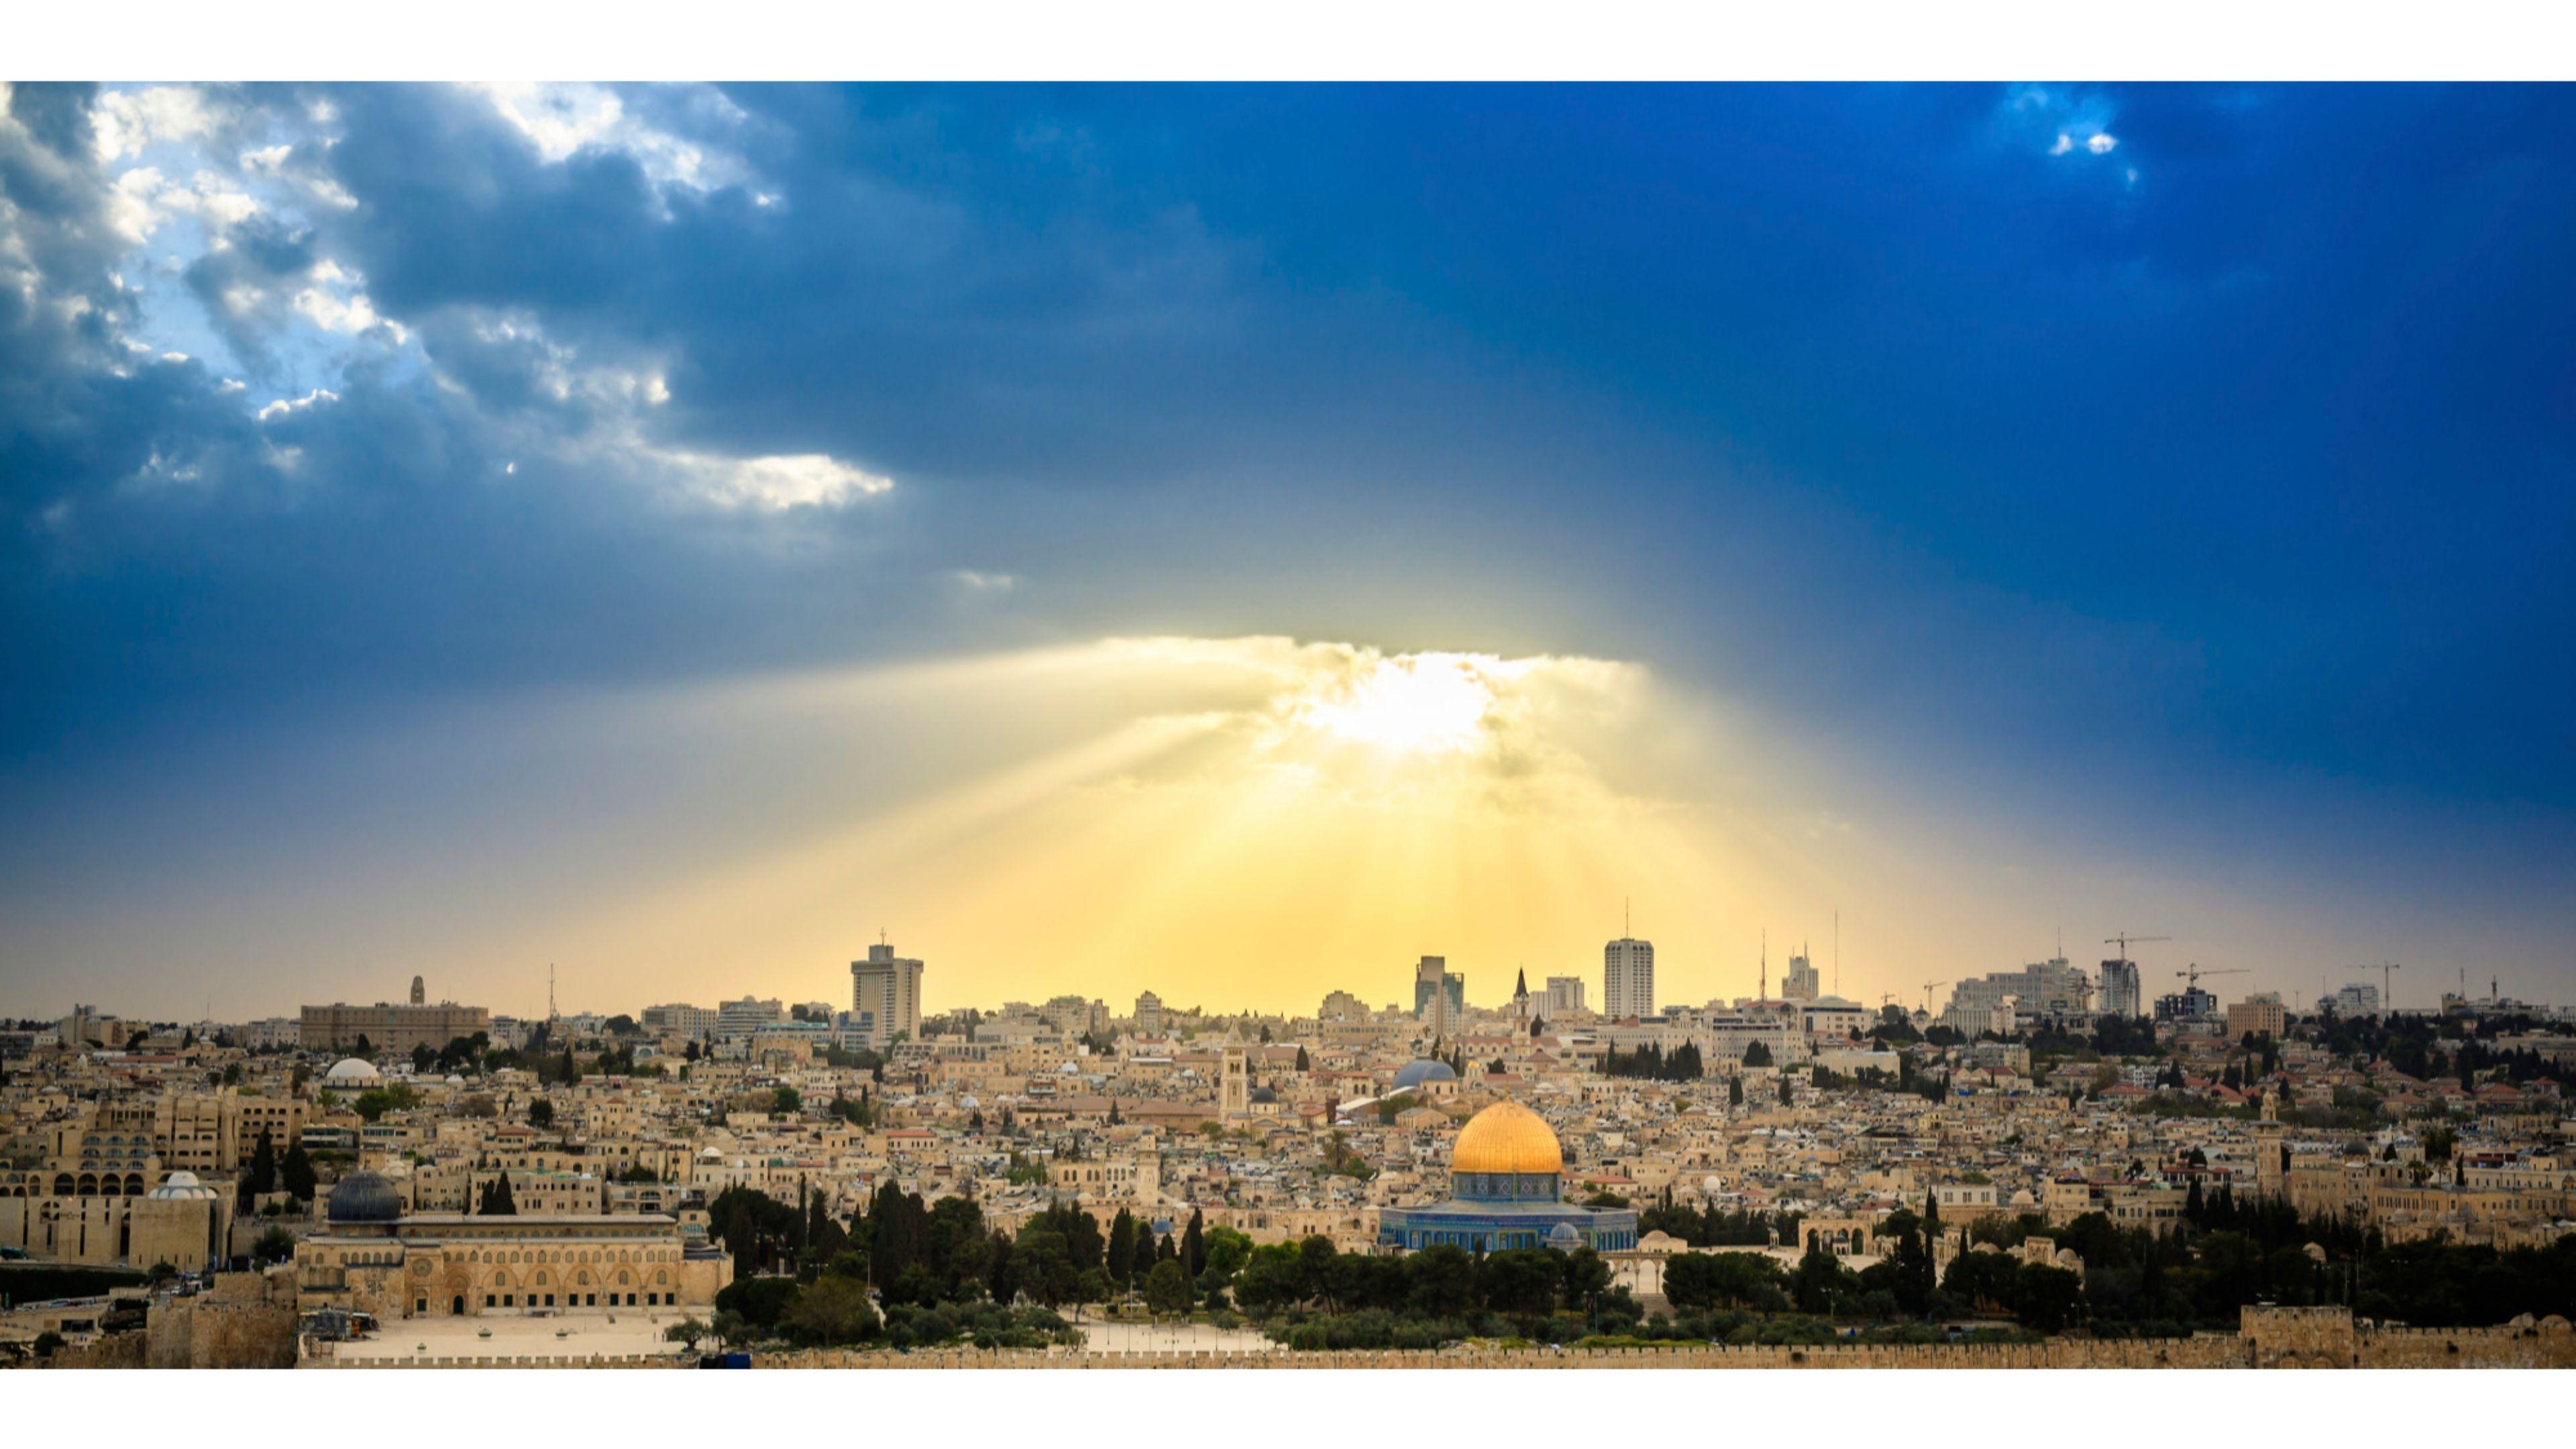 Jerusalem, Israel Landscapes Wallpaper, 3840x2160 4K Desktop